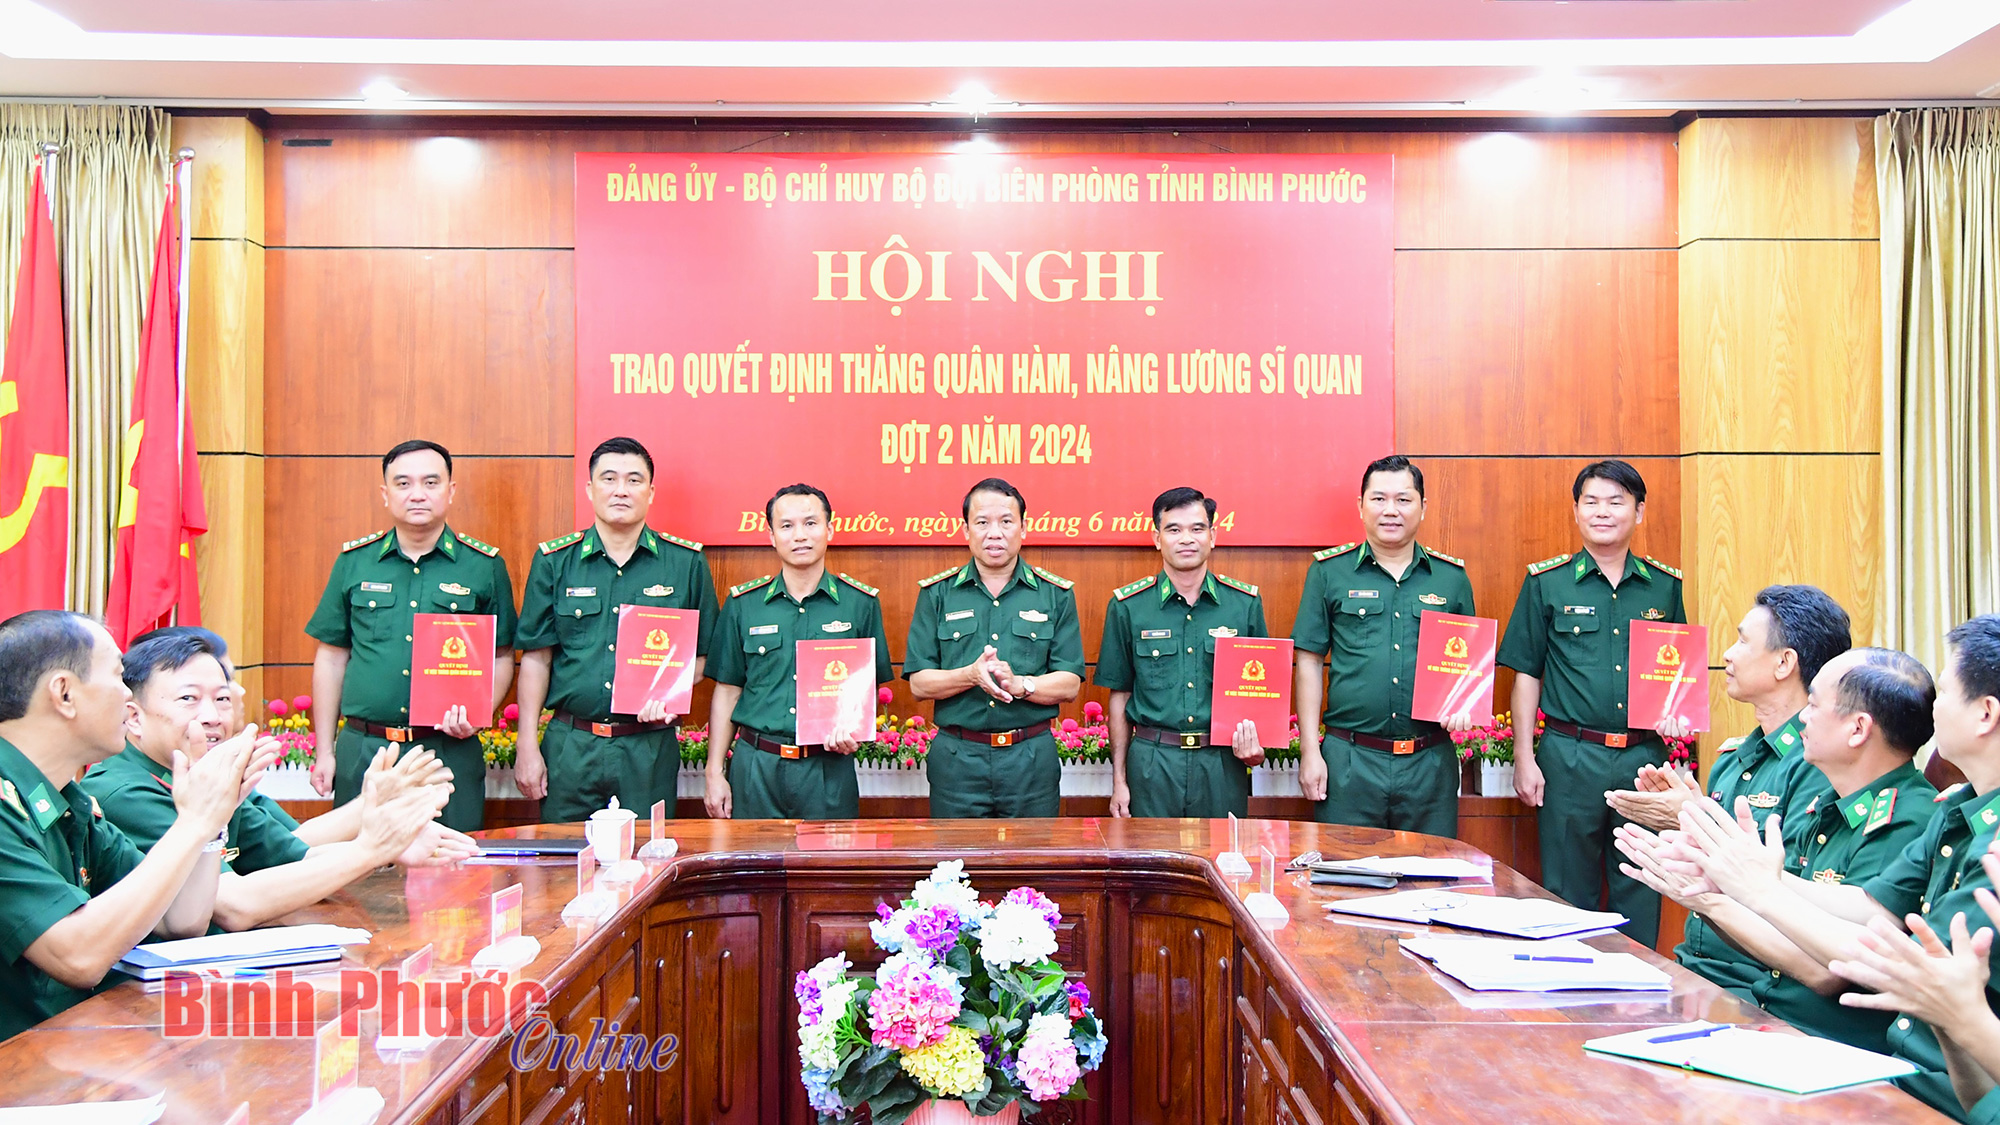 Bộ đội Biên phòng tỉnh Bình Phước trao quyết định thăng quân hàm đợt II, năm 2024